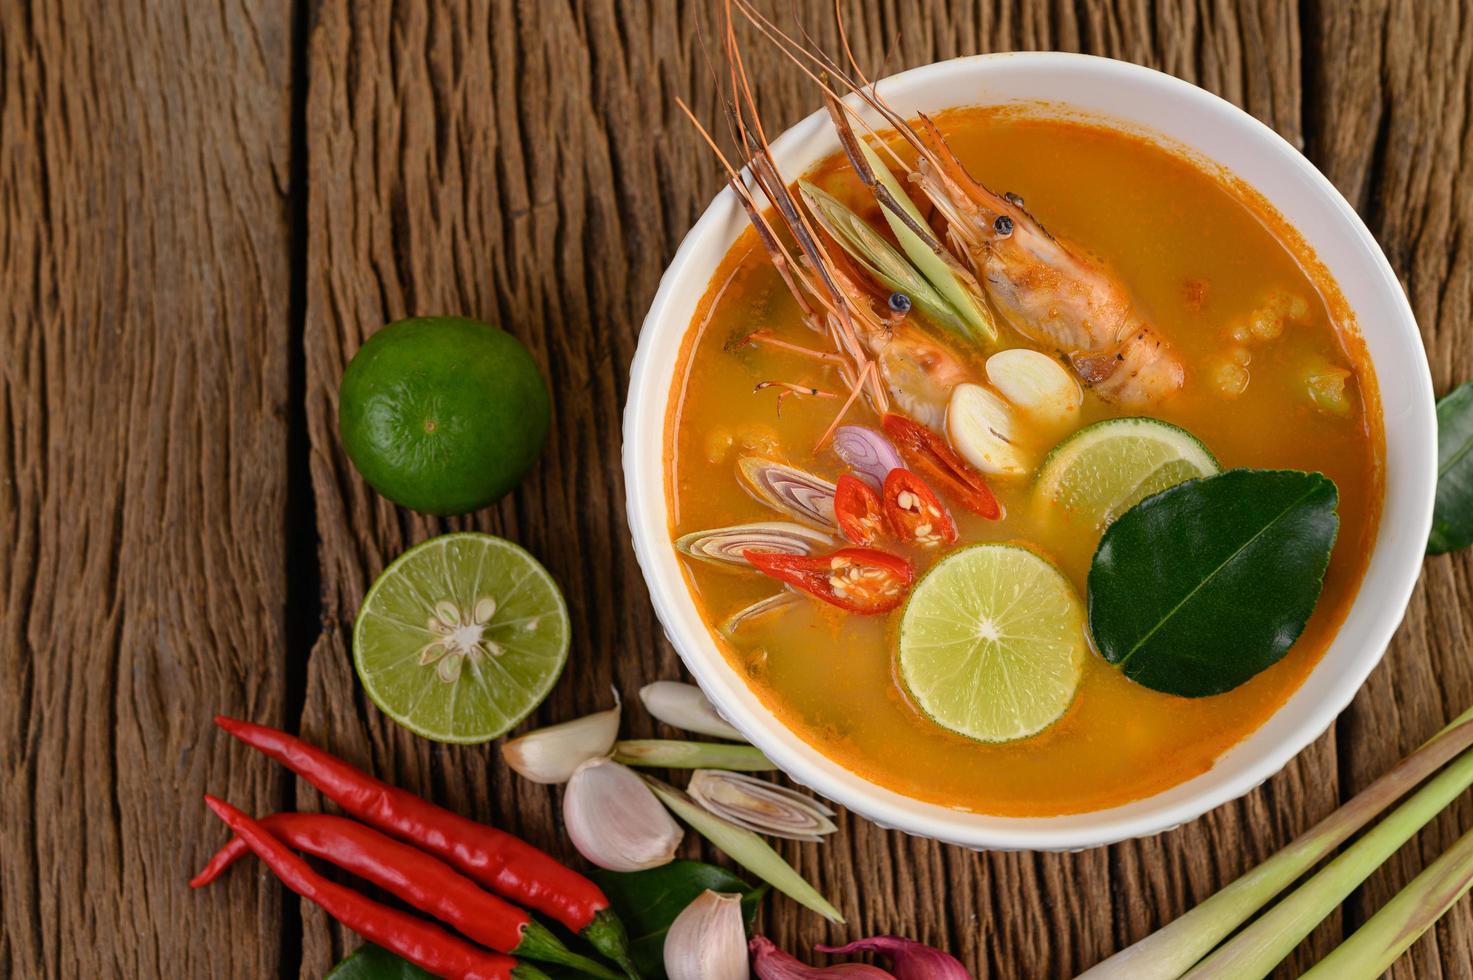 soupe tom yum kung thai chaude et épicée photo